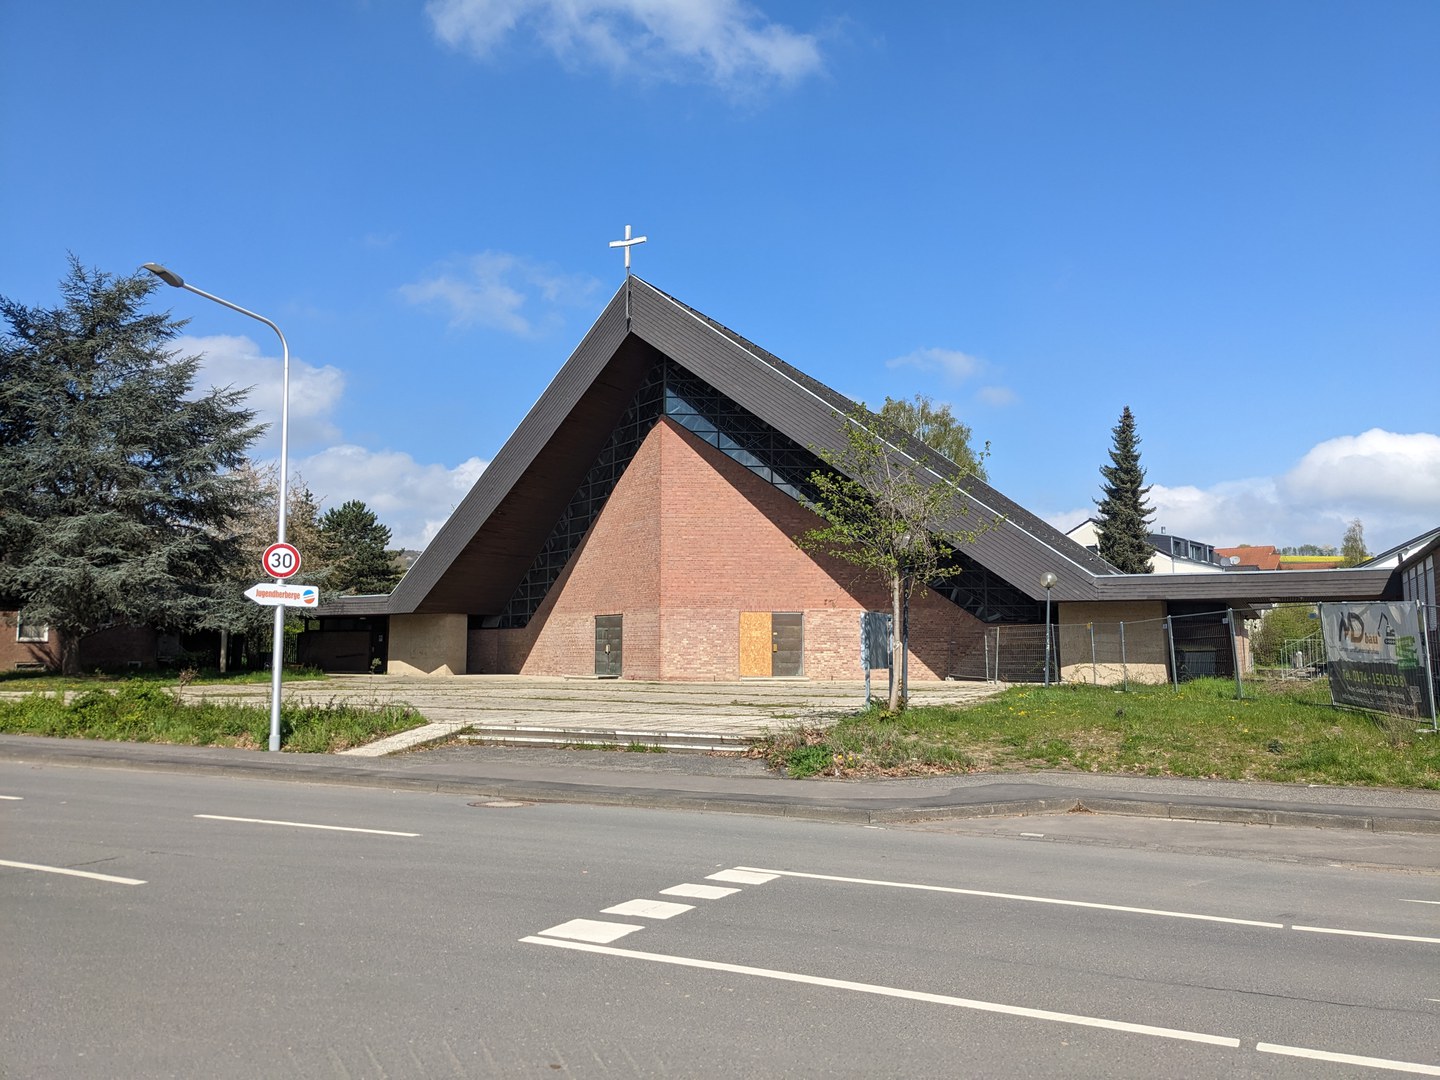 St. Pius Kirche in Bad Neuenahr-Ahrweiler